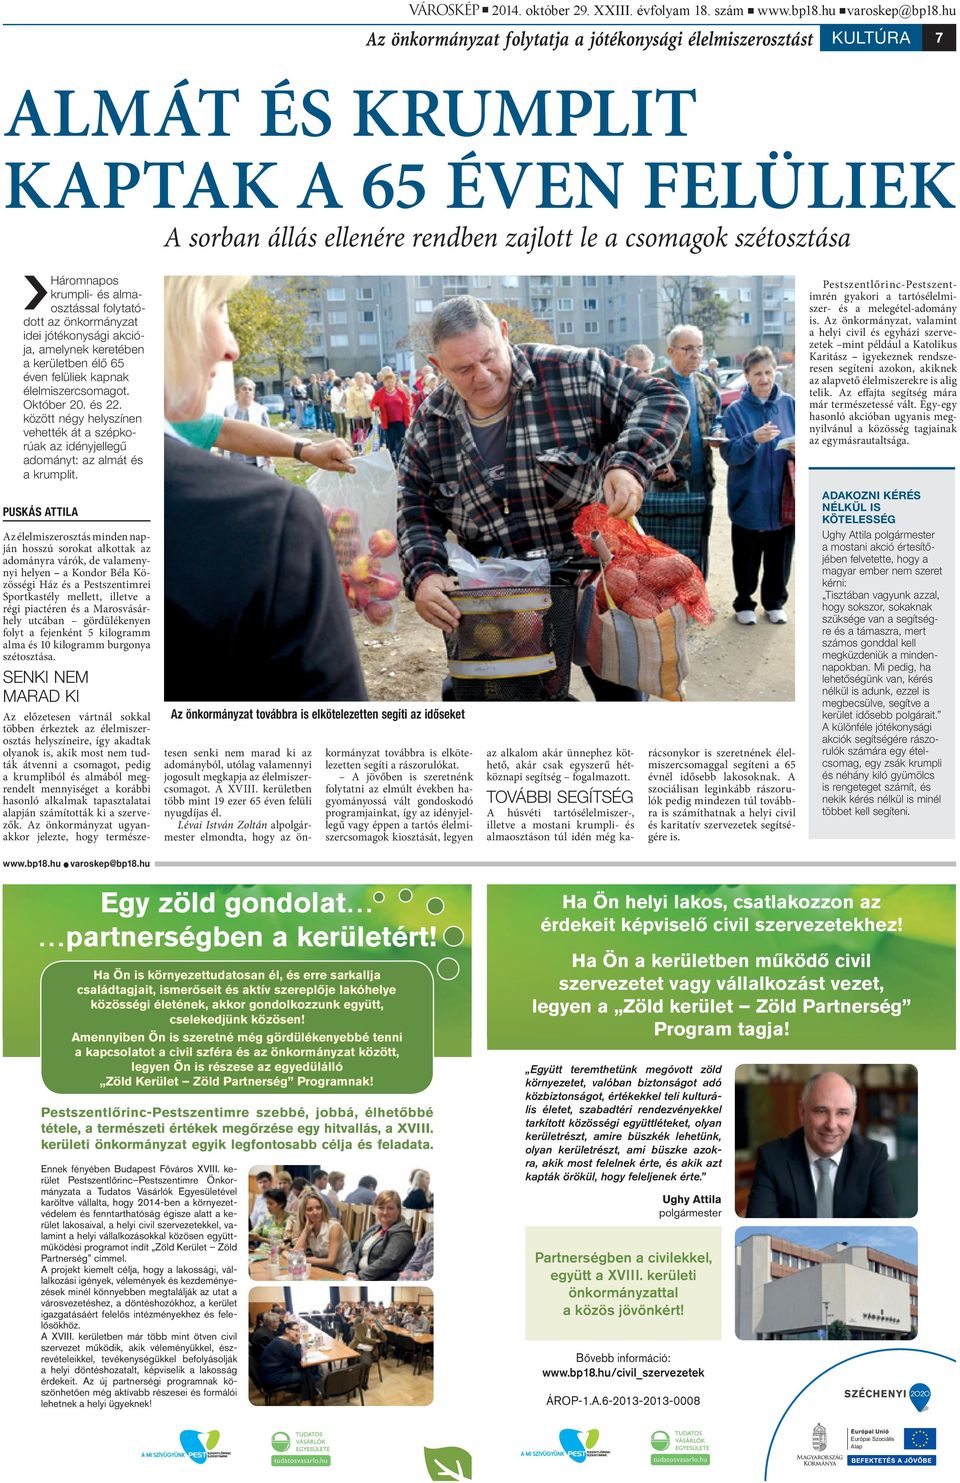 krumpli- és almaosztással folytatódott az önkormányzat idei jótékonysági akciója, amelynek keretében a kerületben élő 65 éven felüliek kapnak élelmiszercsomagot. Október 20. és 22.